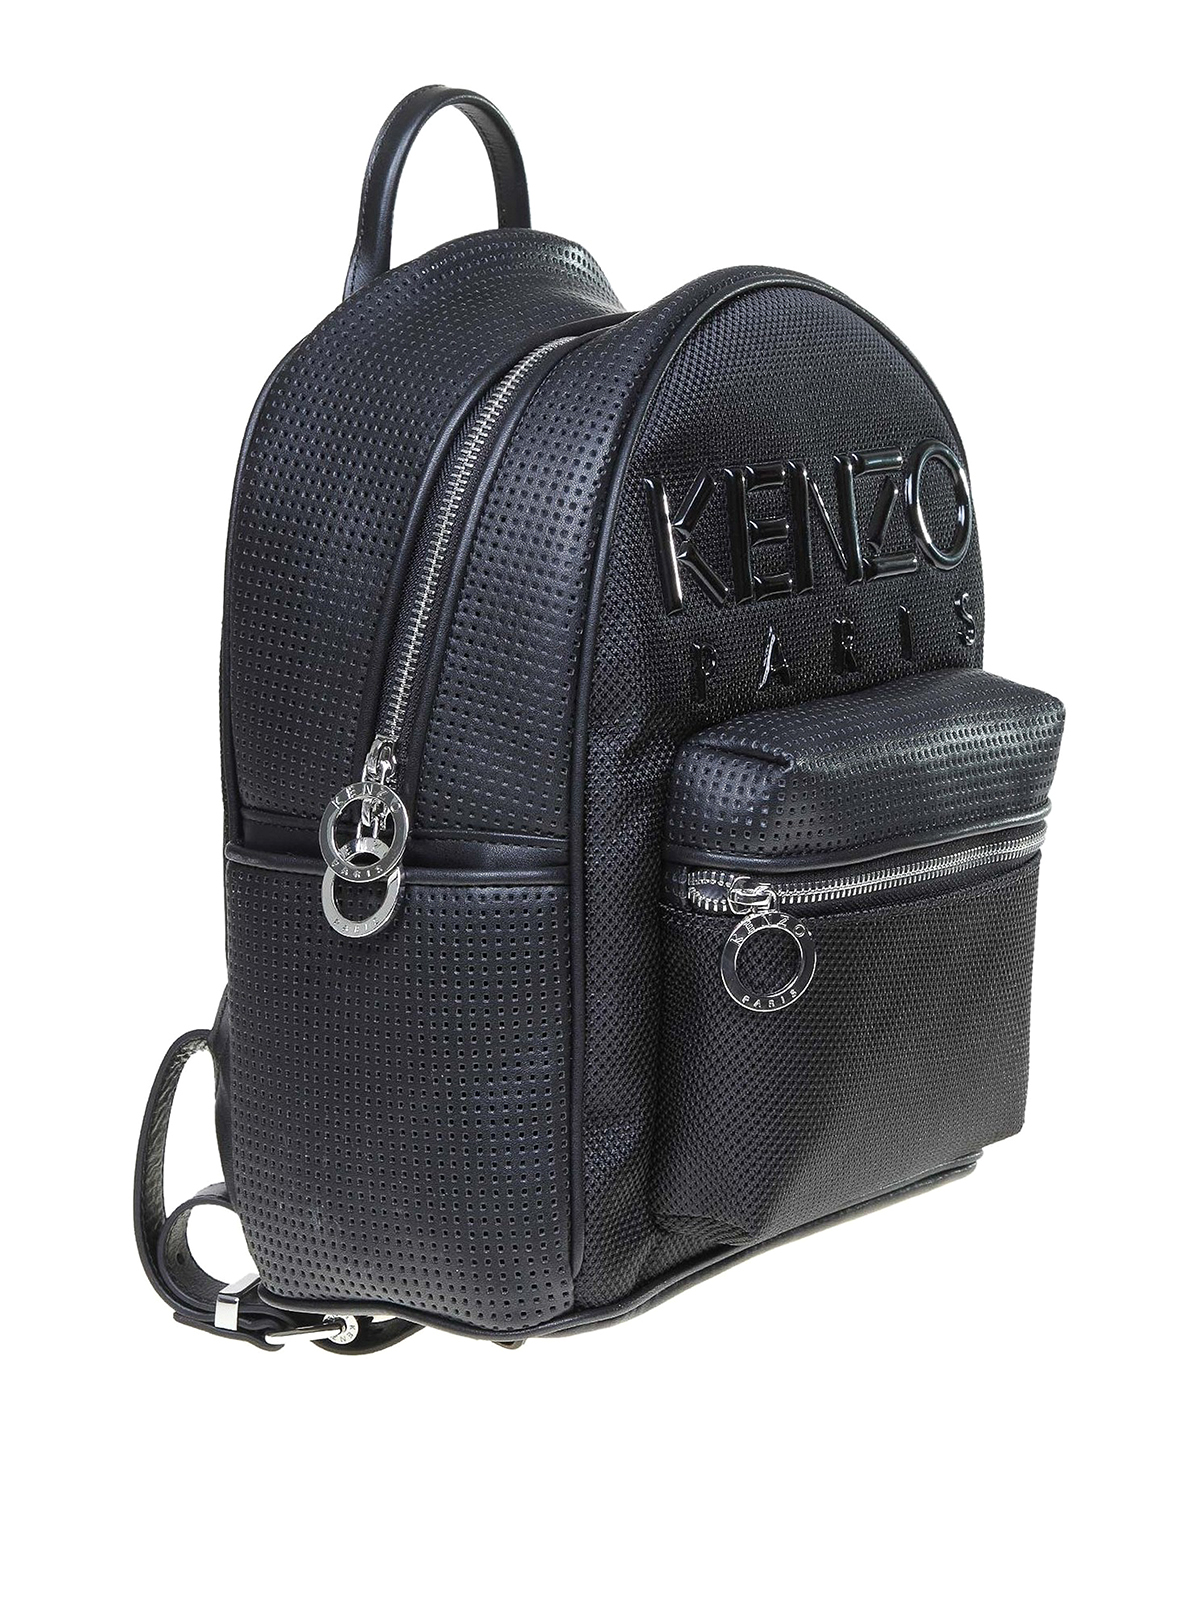 kenzo leather backpack